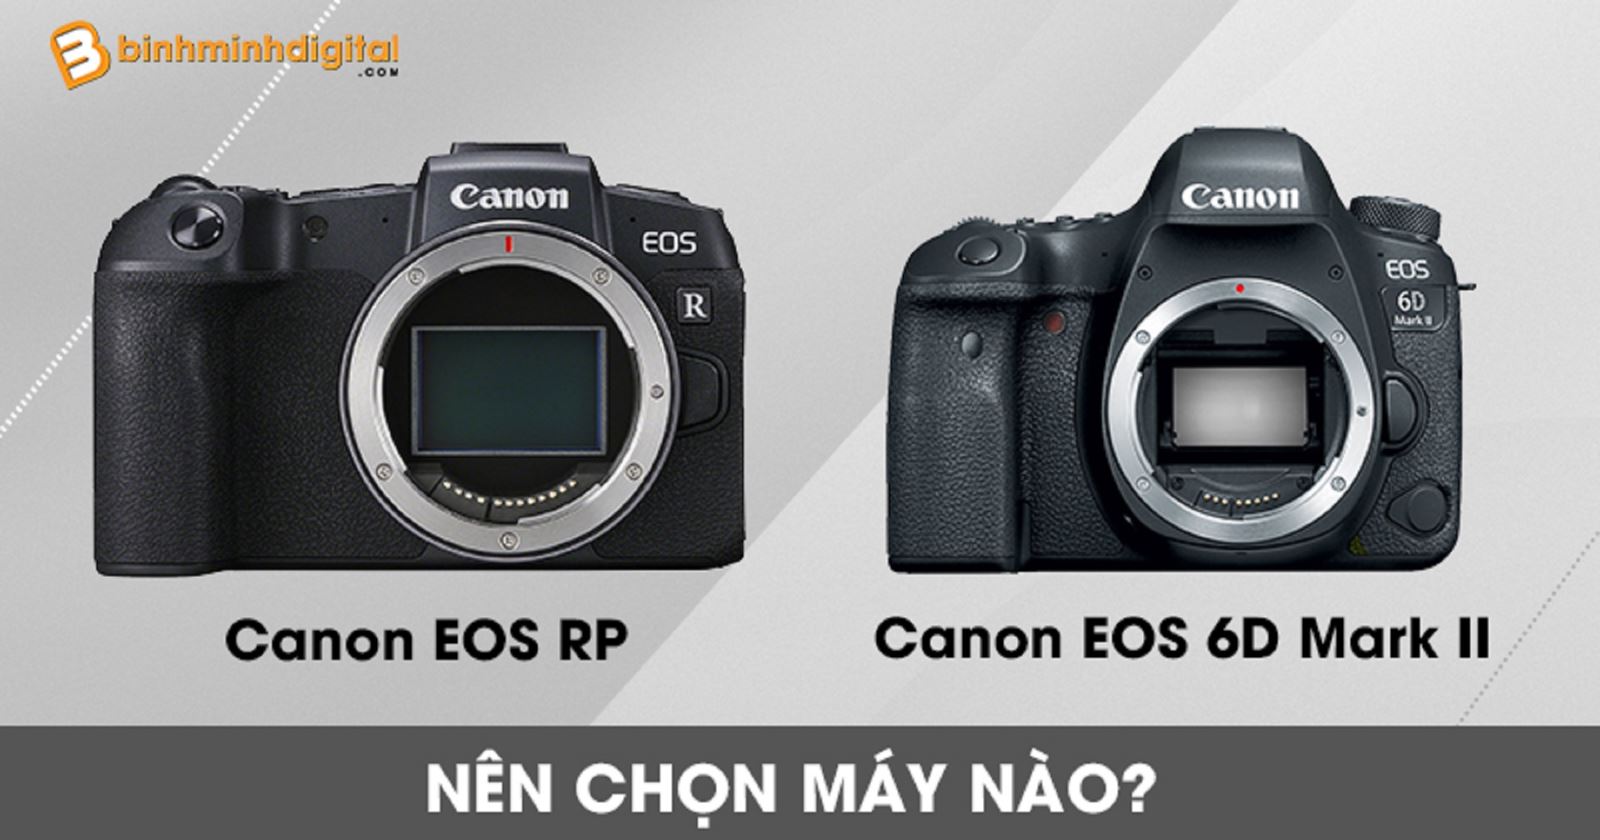 Canon EOS RP và Canon EOS 6D Mark II nên chọn máy nào?